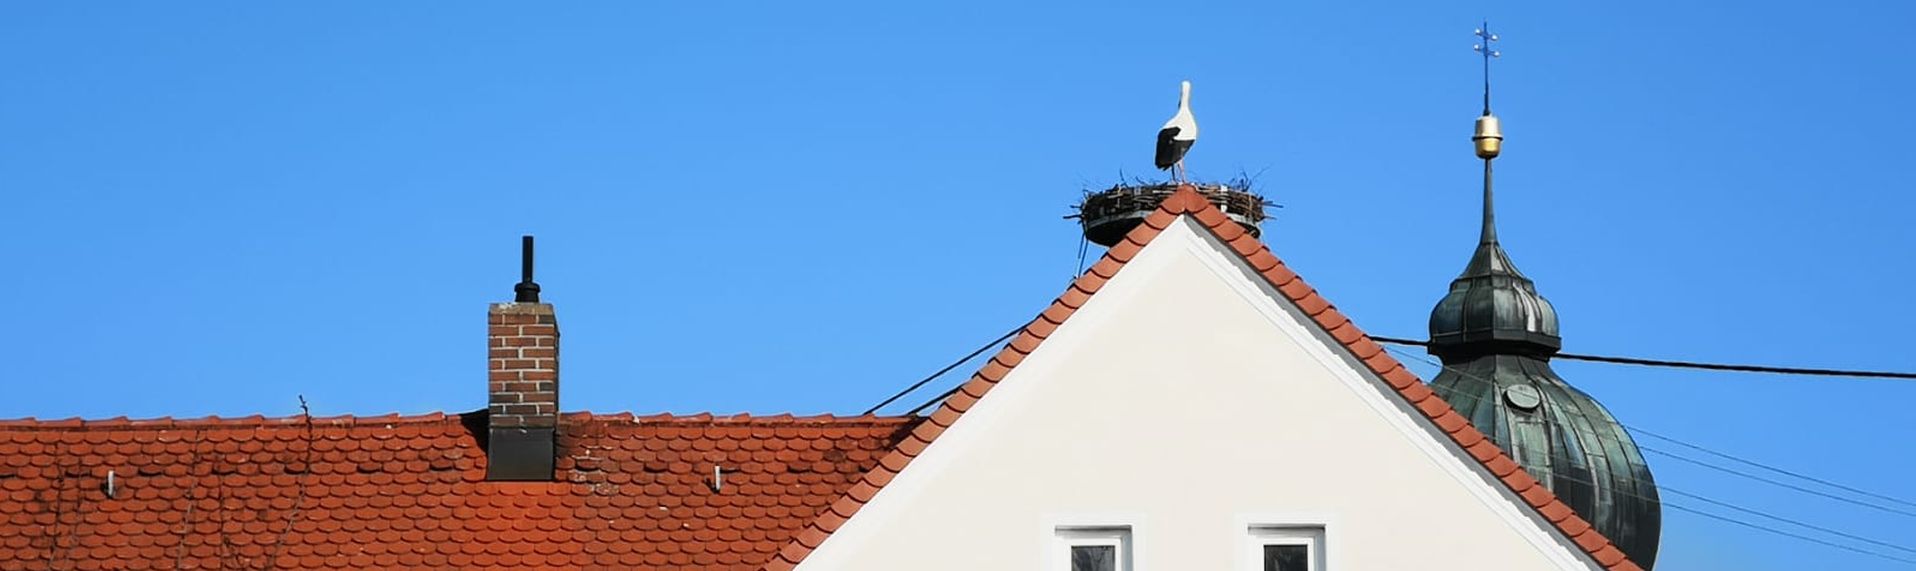 Biesenberger – Storch auf Rathausdach